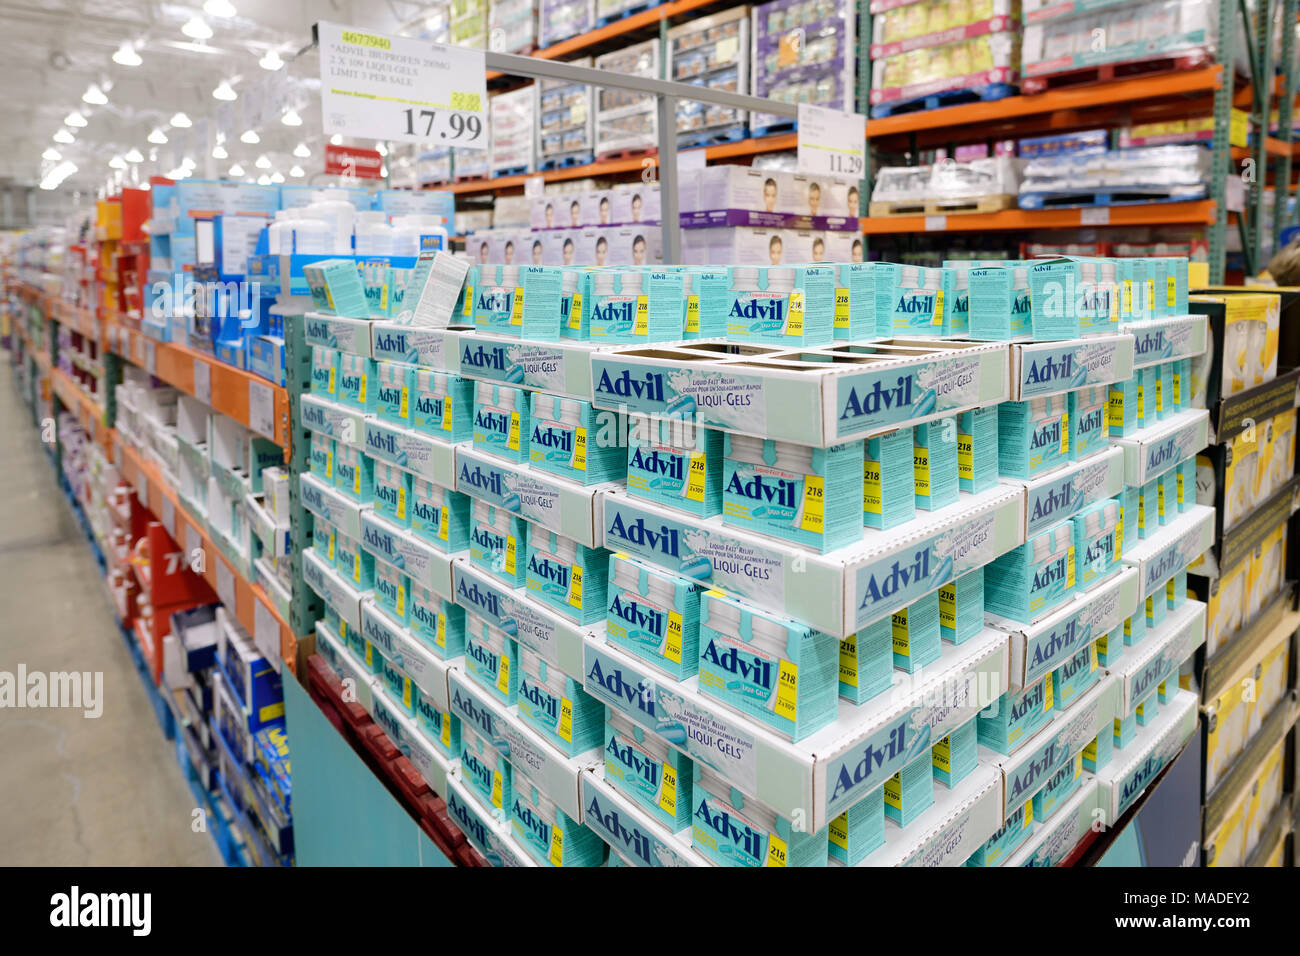 Advil liqui-gel sollievo dal dolore farmaci a Costco Wholesale magazzino di appartenenza store sezione farmacia. La British Columbia, Canada 2017. Foto Stock